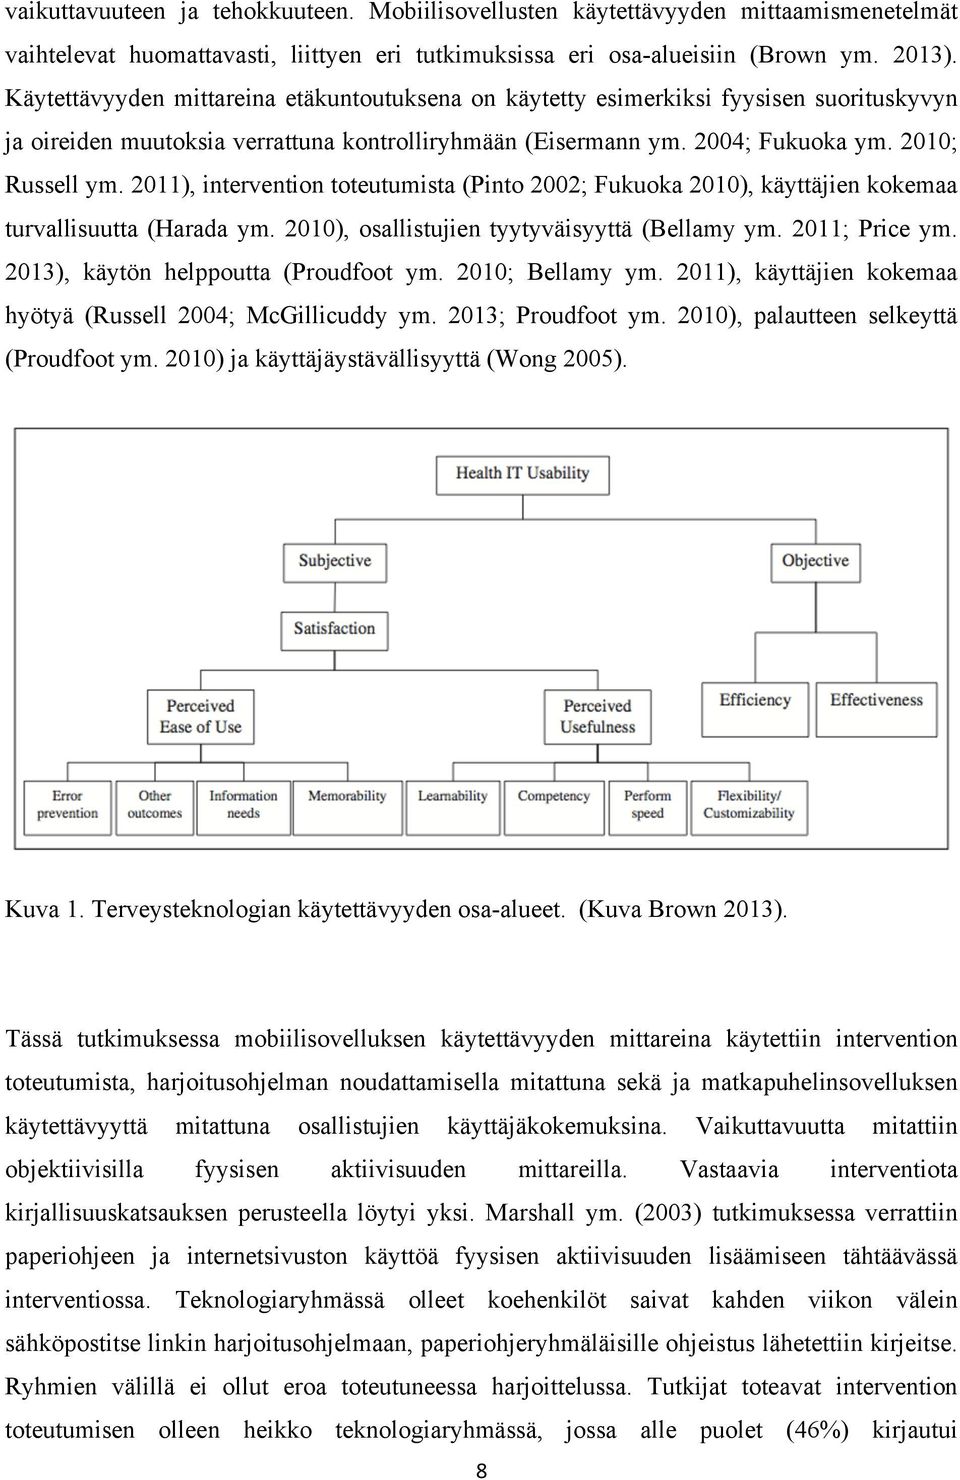 2011), intervention toteutumista (Pinto 2002; Fukuoka 2010), käyttäjien kokemaa turvallisuutta (Harada ym. 2010), osallistujien tyytyväisyyttä (Bellamy ym. 2011; Price ym.